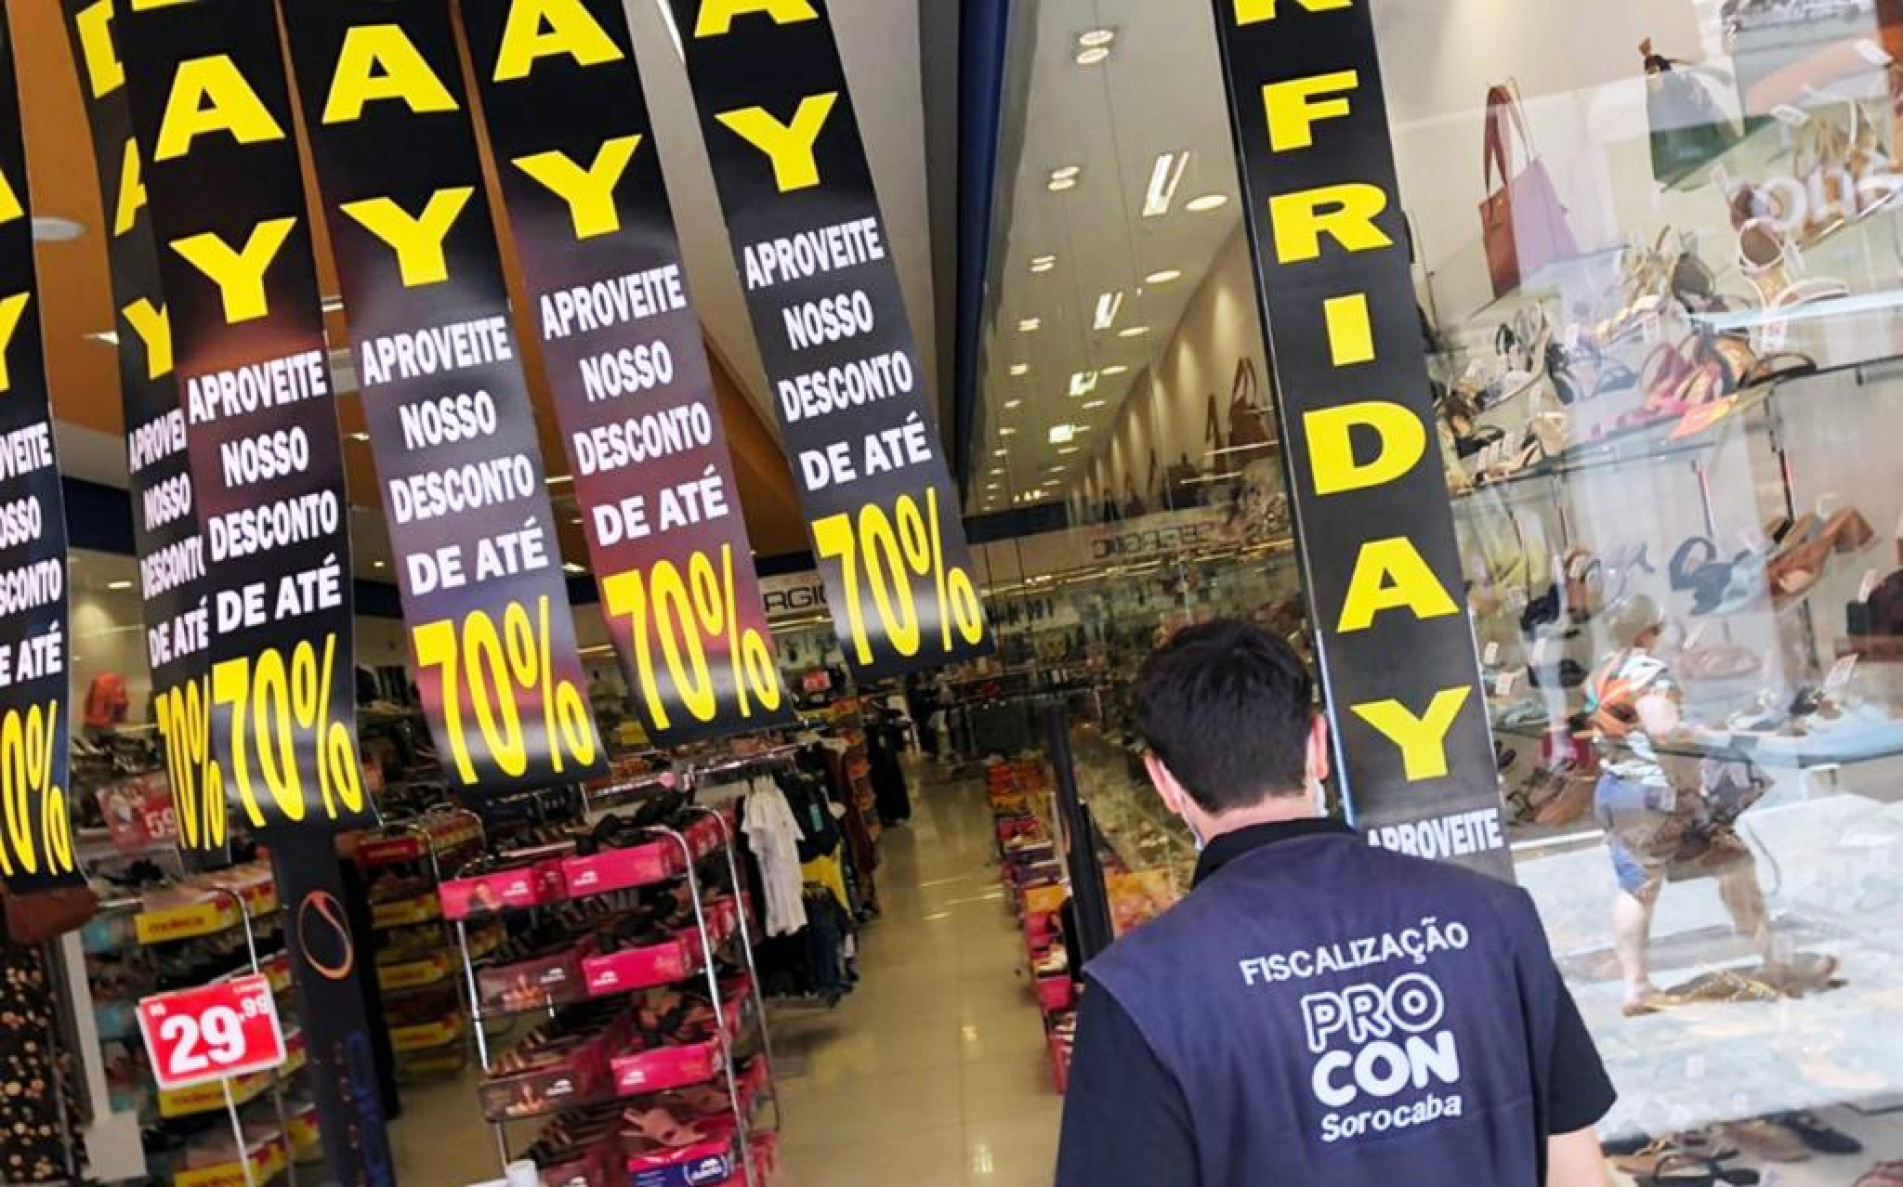 Mercado Livre tem problemas em campanha de Black Friday e cancela nova ação  - Mundo Conectado